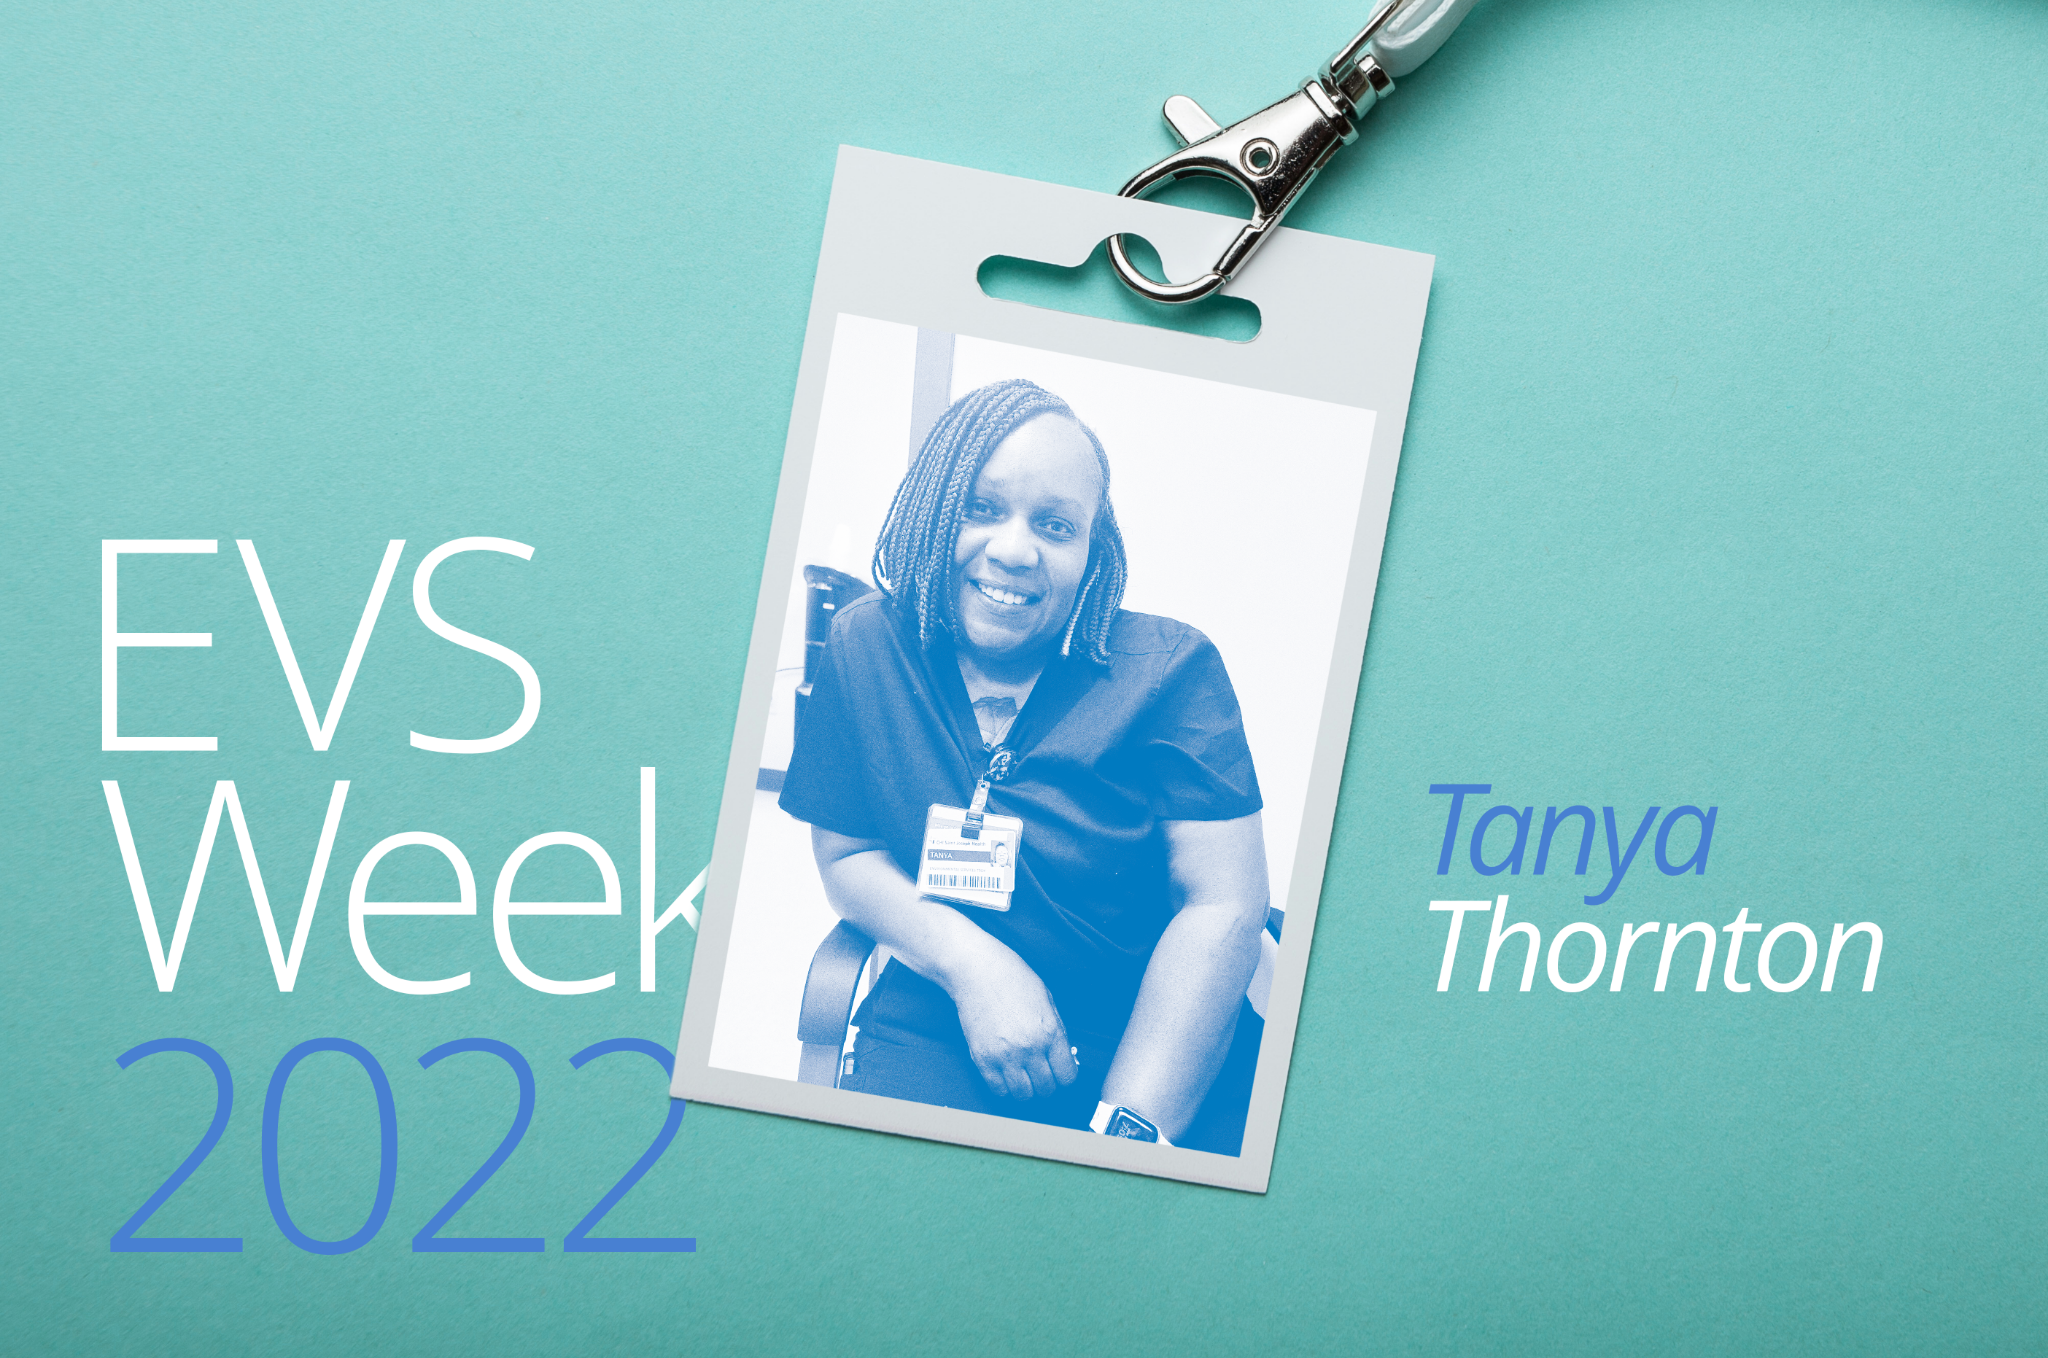 EVS Week 2022—Tanya Thornton